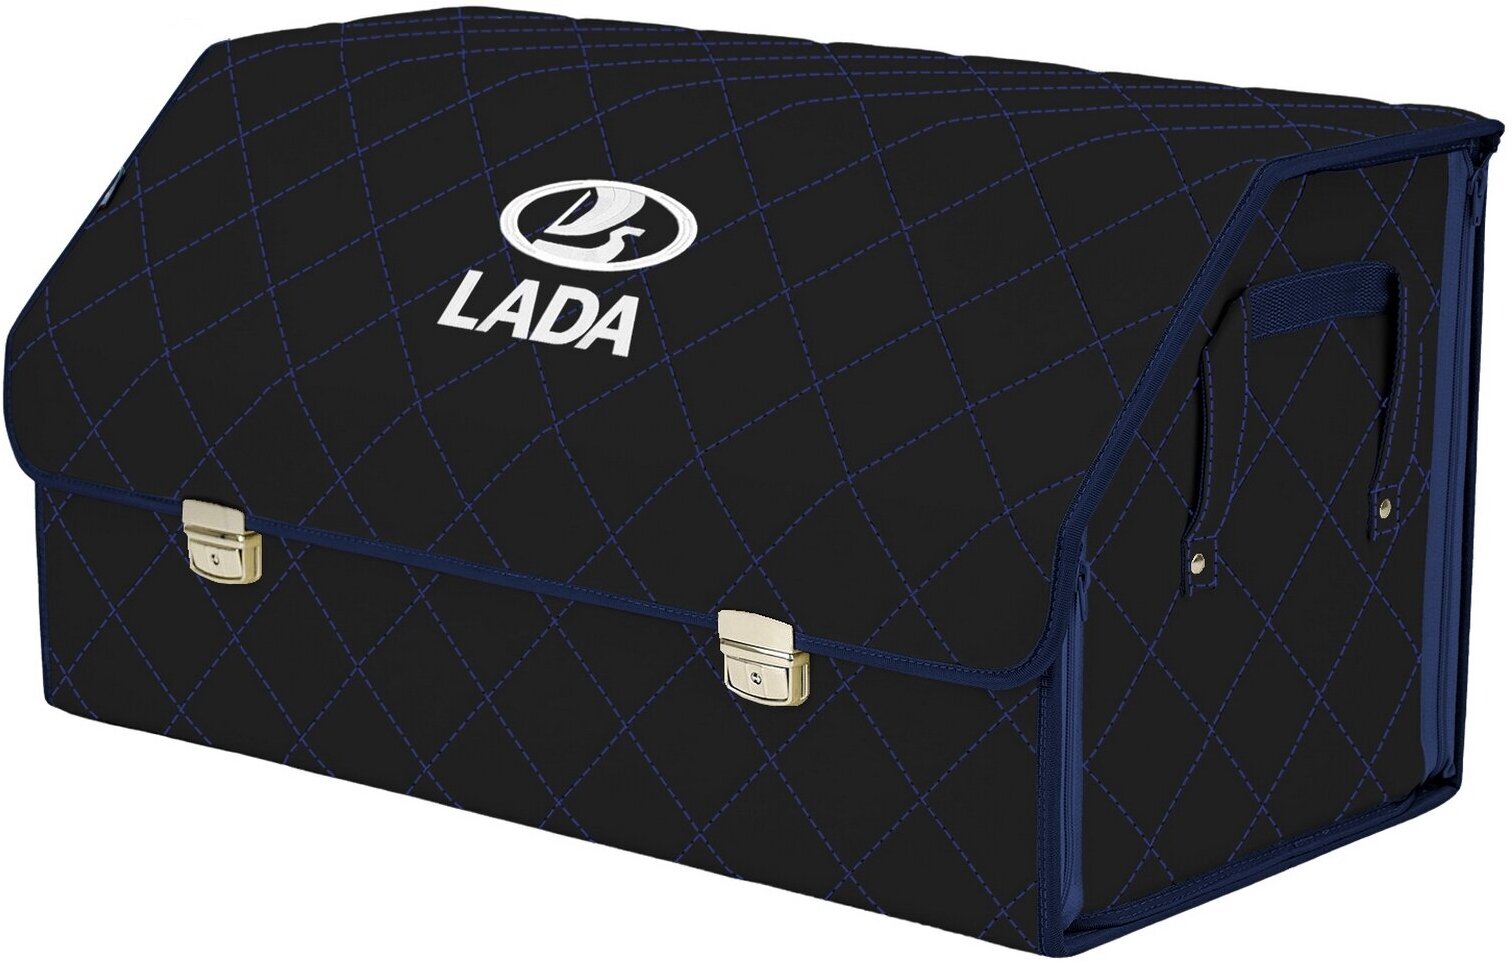 Органайзер-саквояж в багажник "Союз Премиум" (размер XL Plus). Цвет: черный с синей прострочкой Ромб и вышивкой LADA (лада).